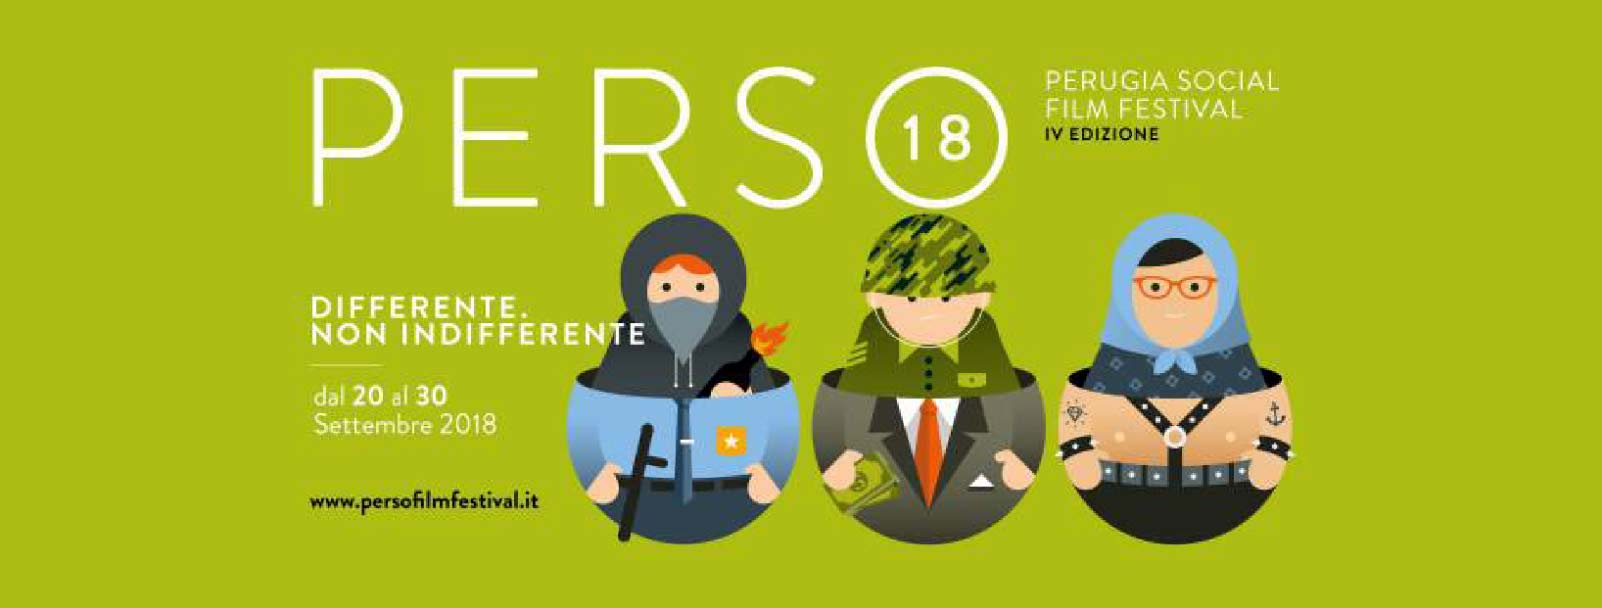 Perso Film festival 2018